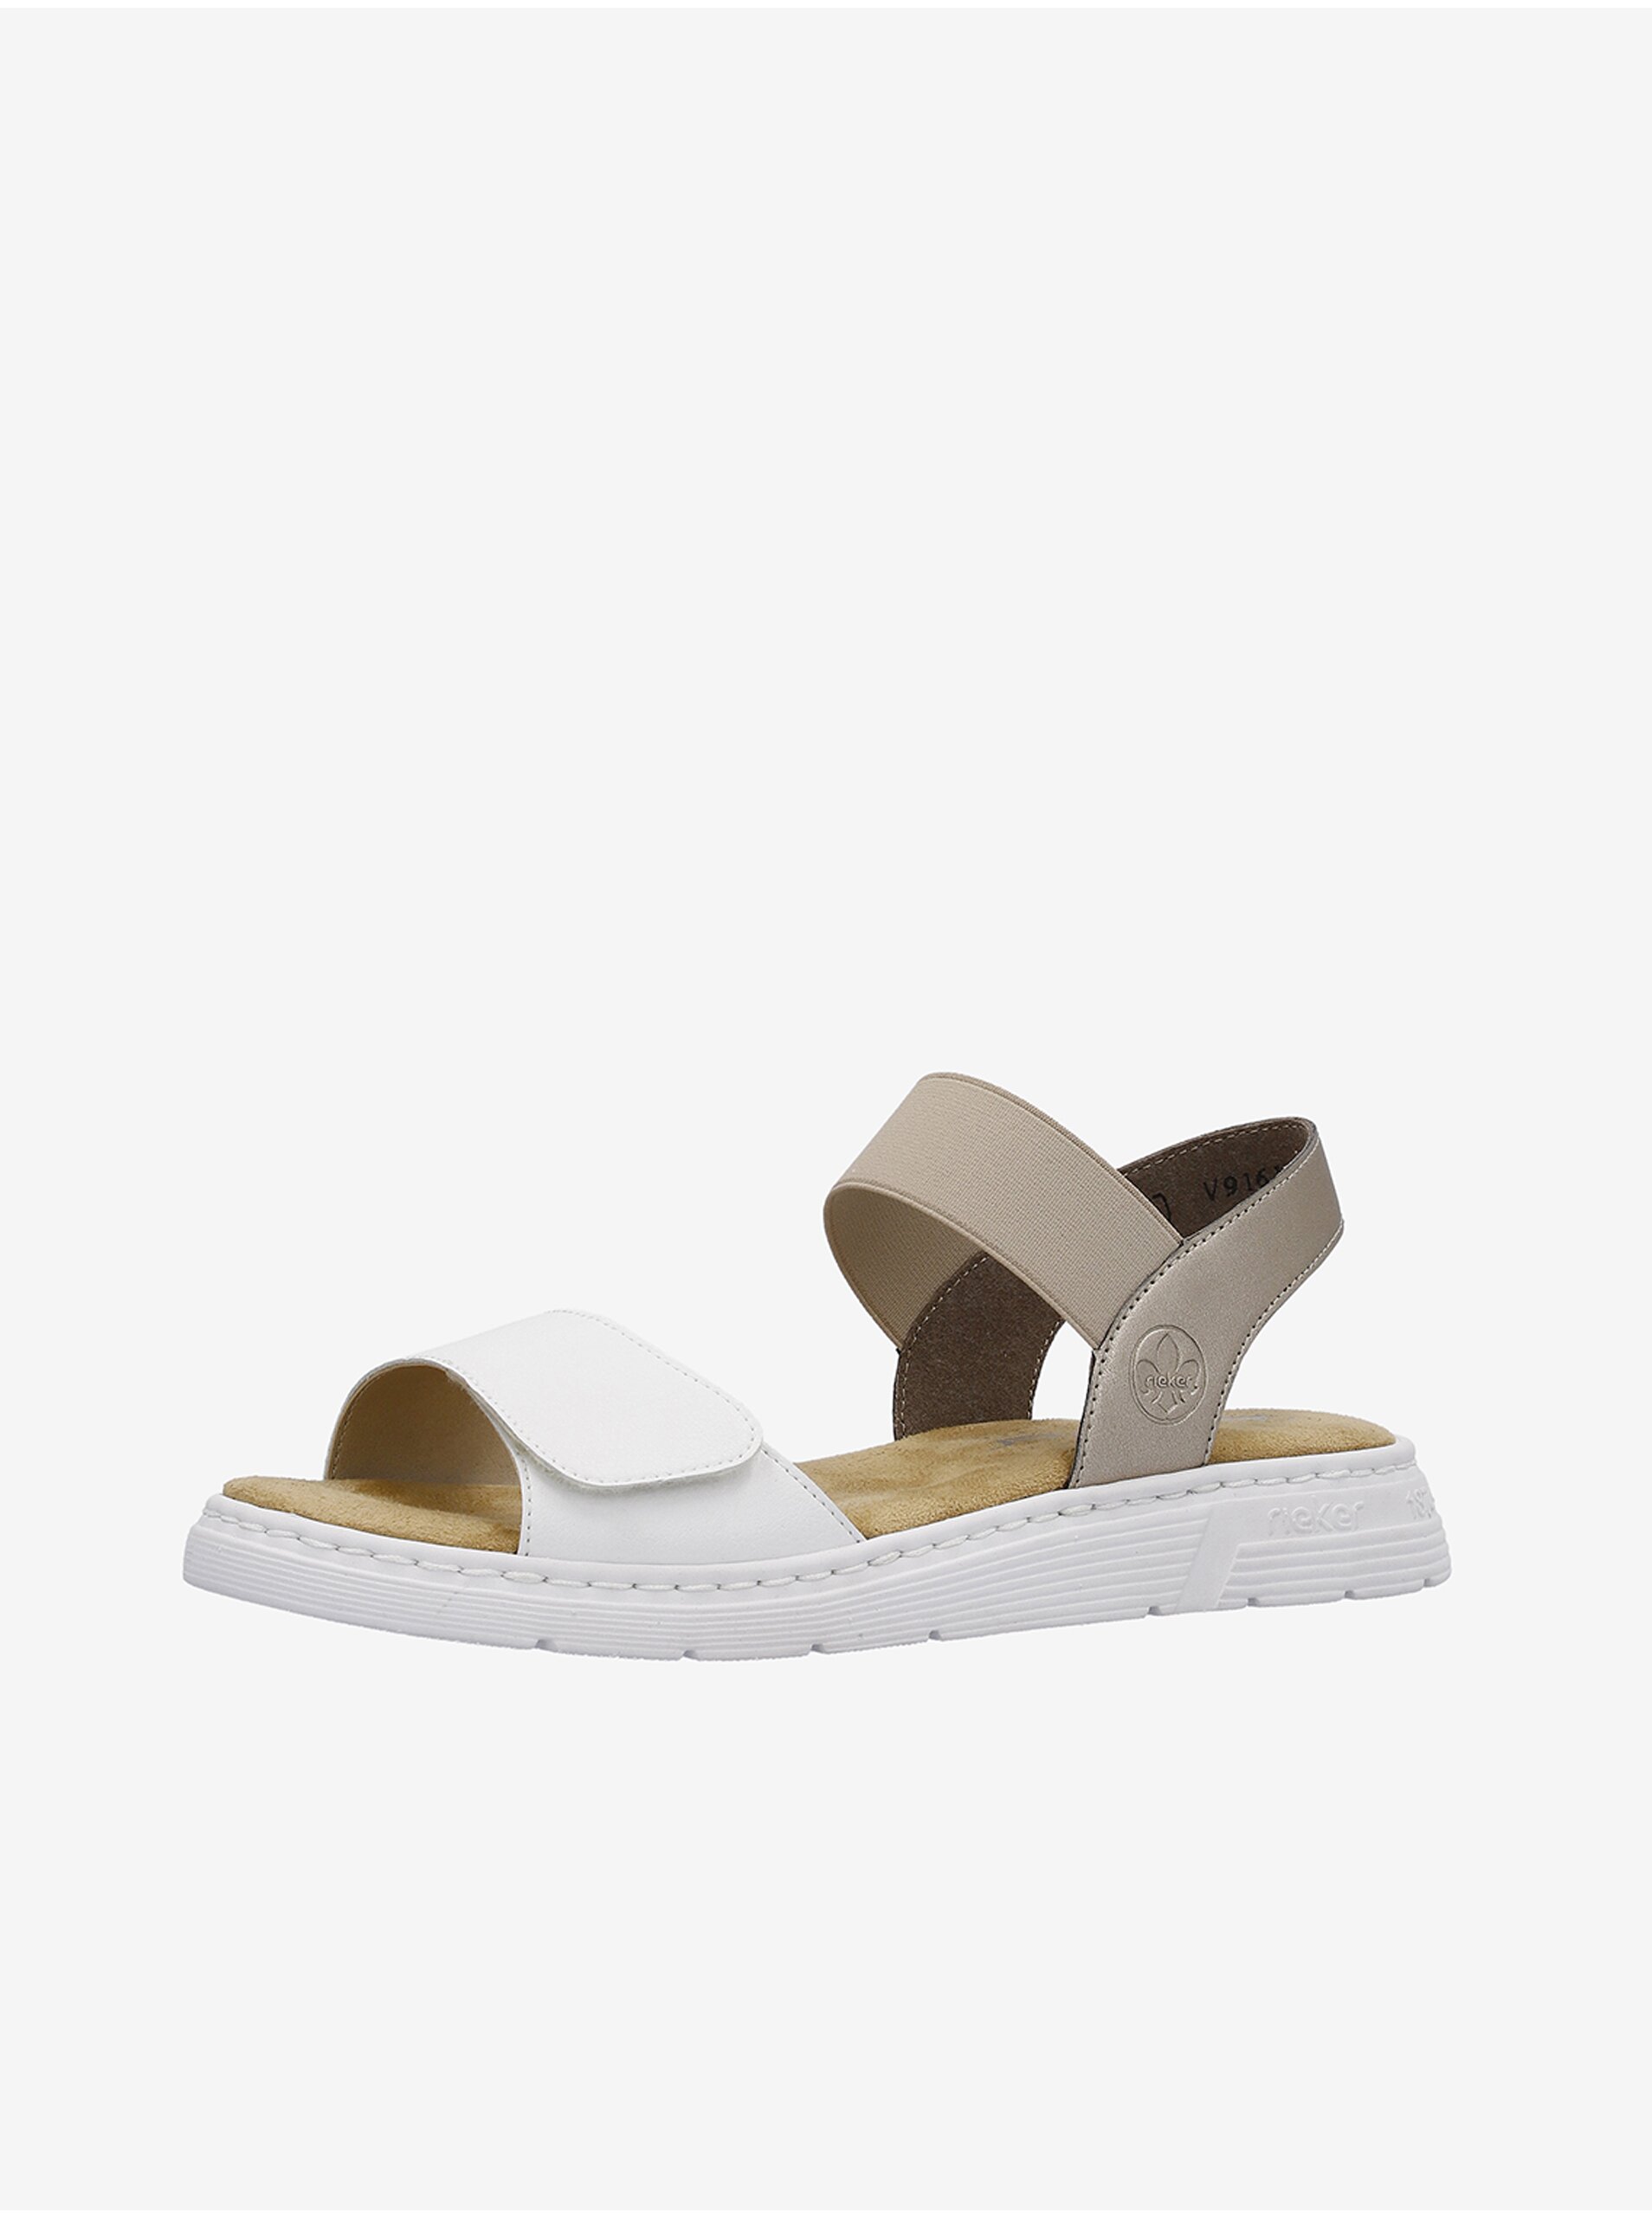 E-shop Béžovo-biele dámske kožené sandálky Rieker